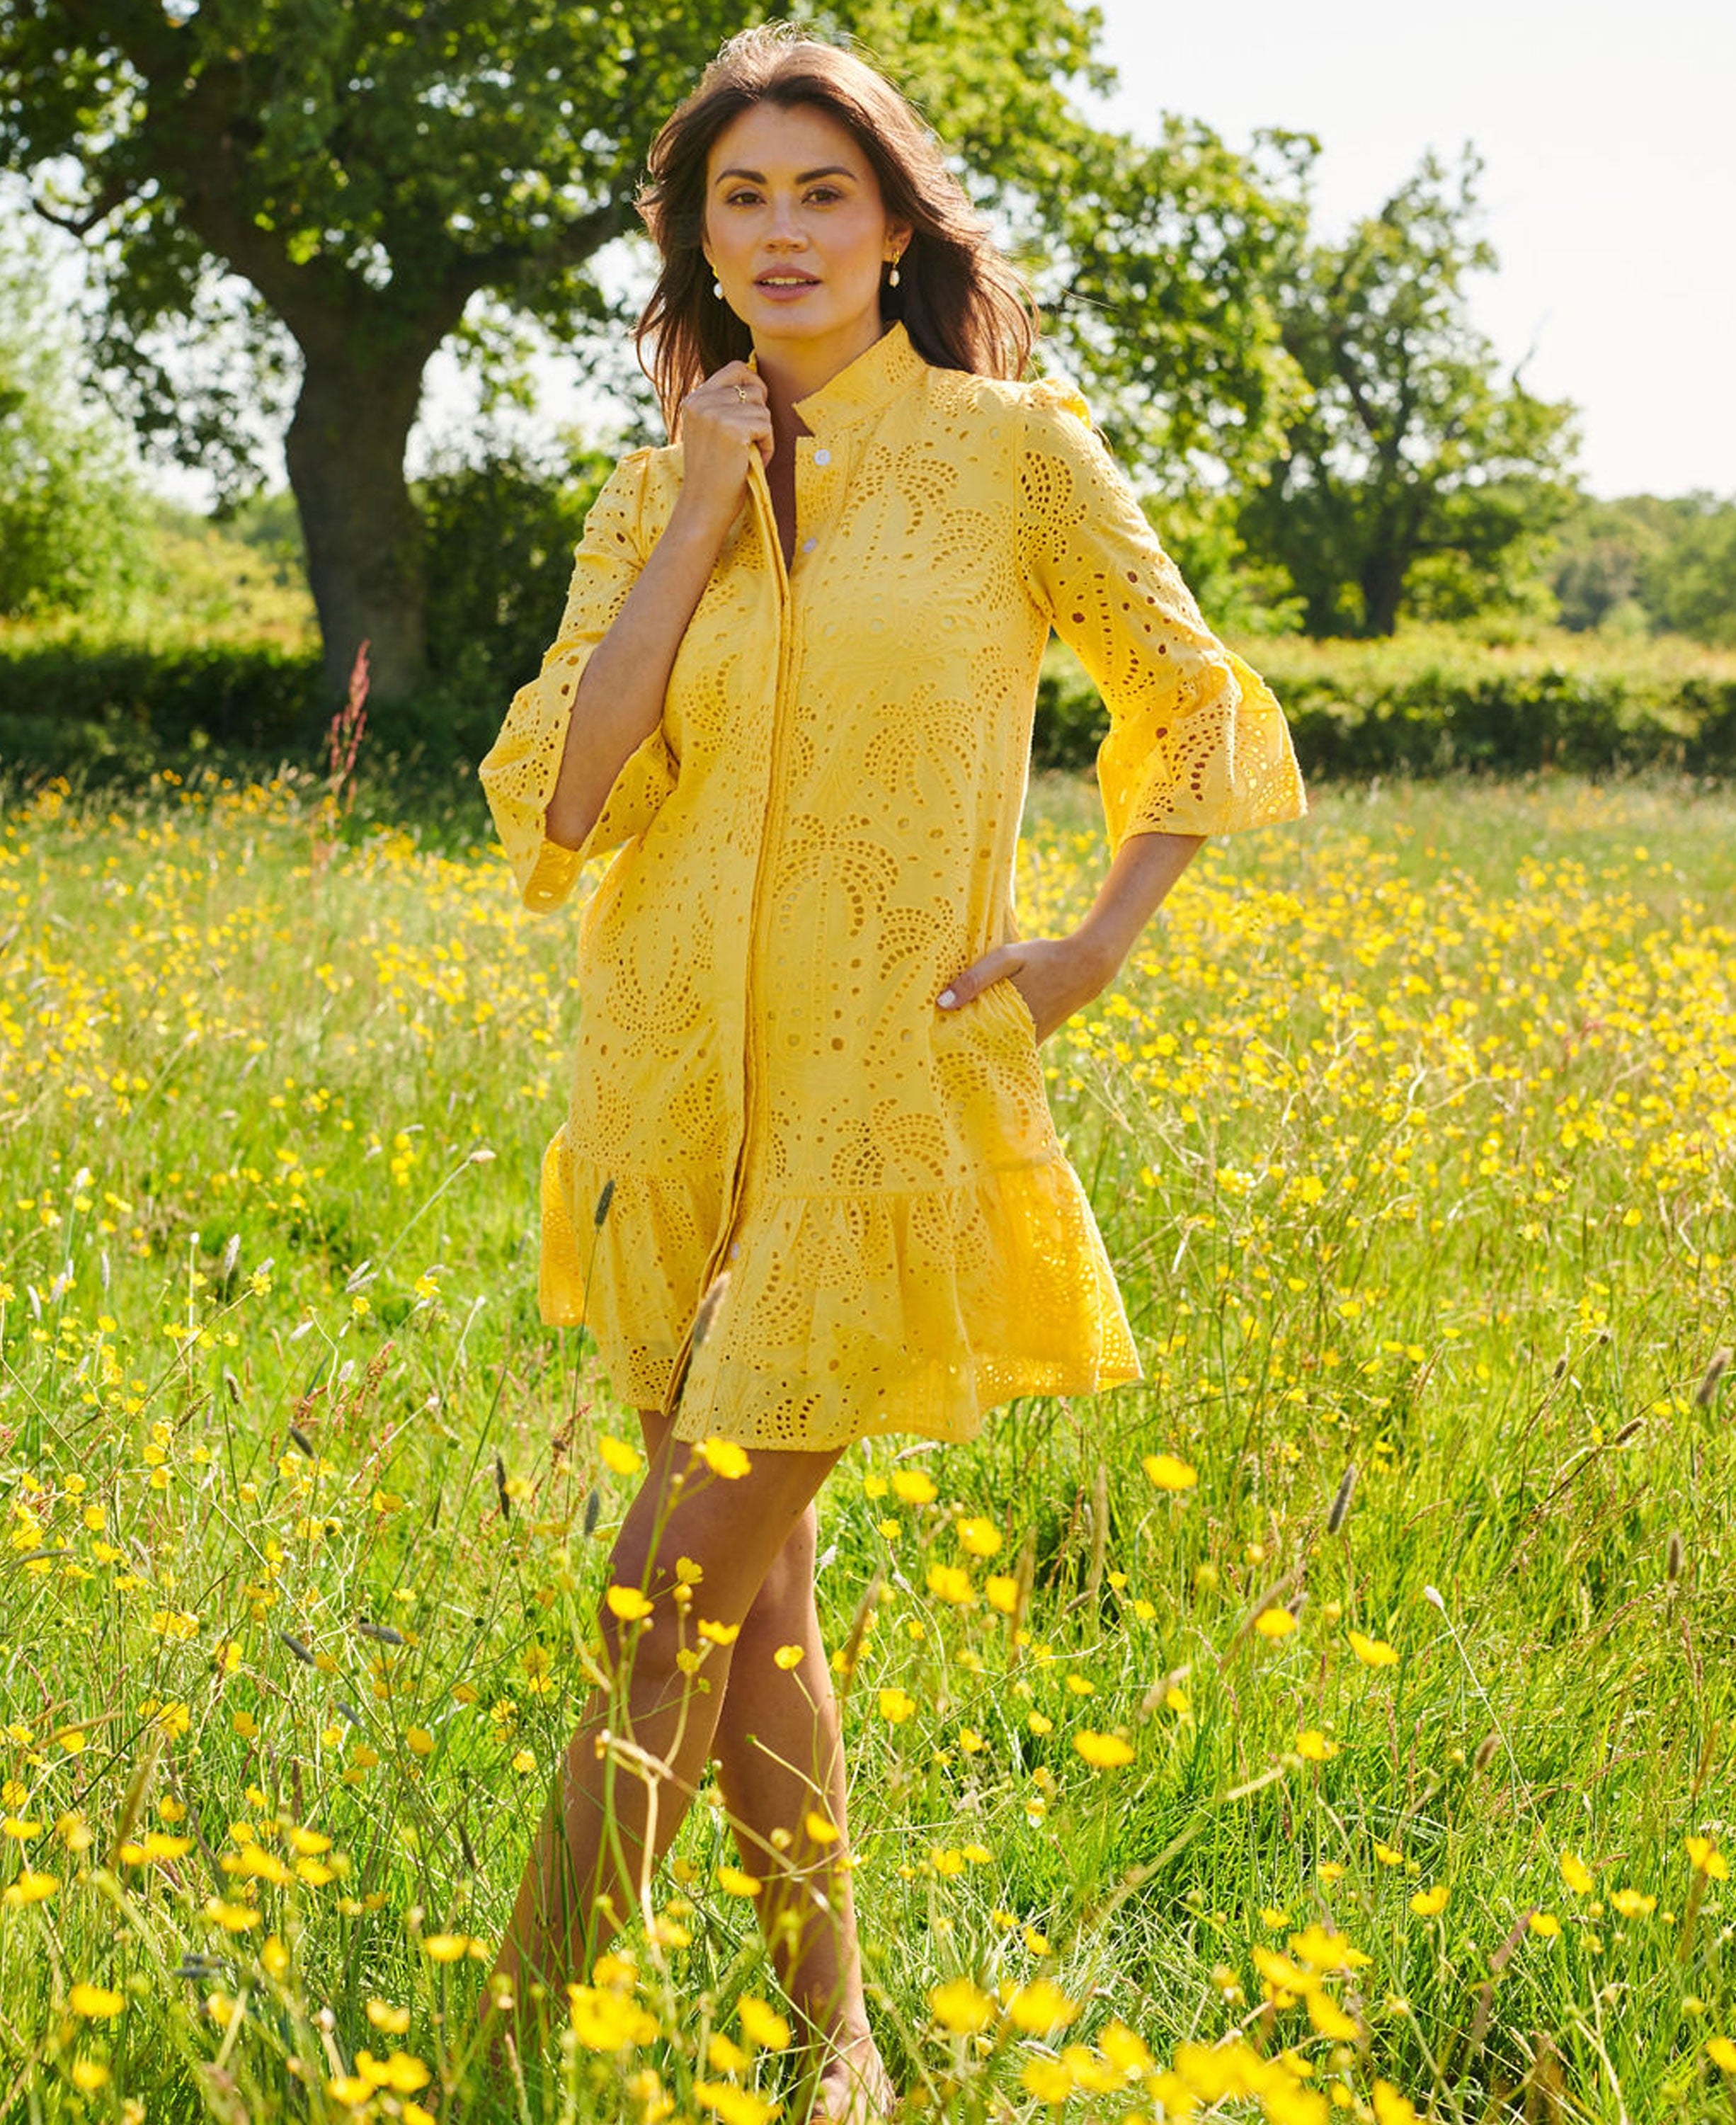 St Tropez Dress - Yellow